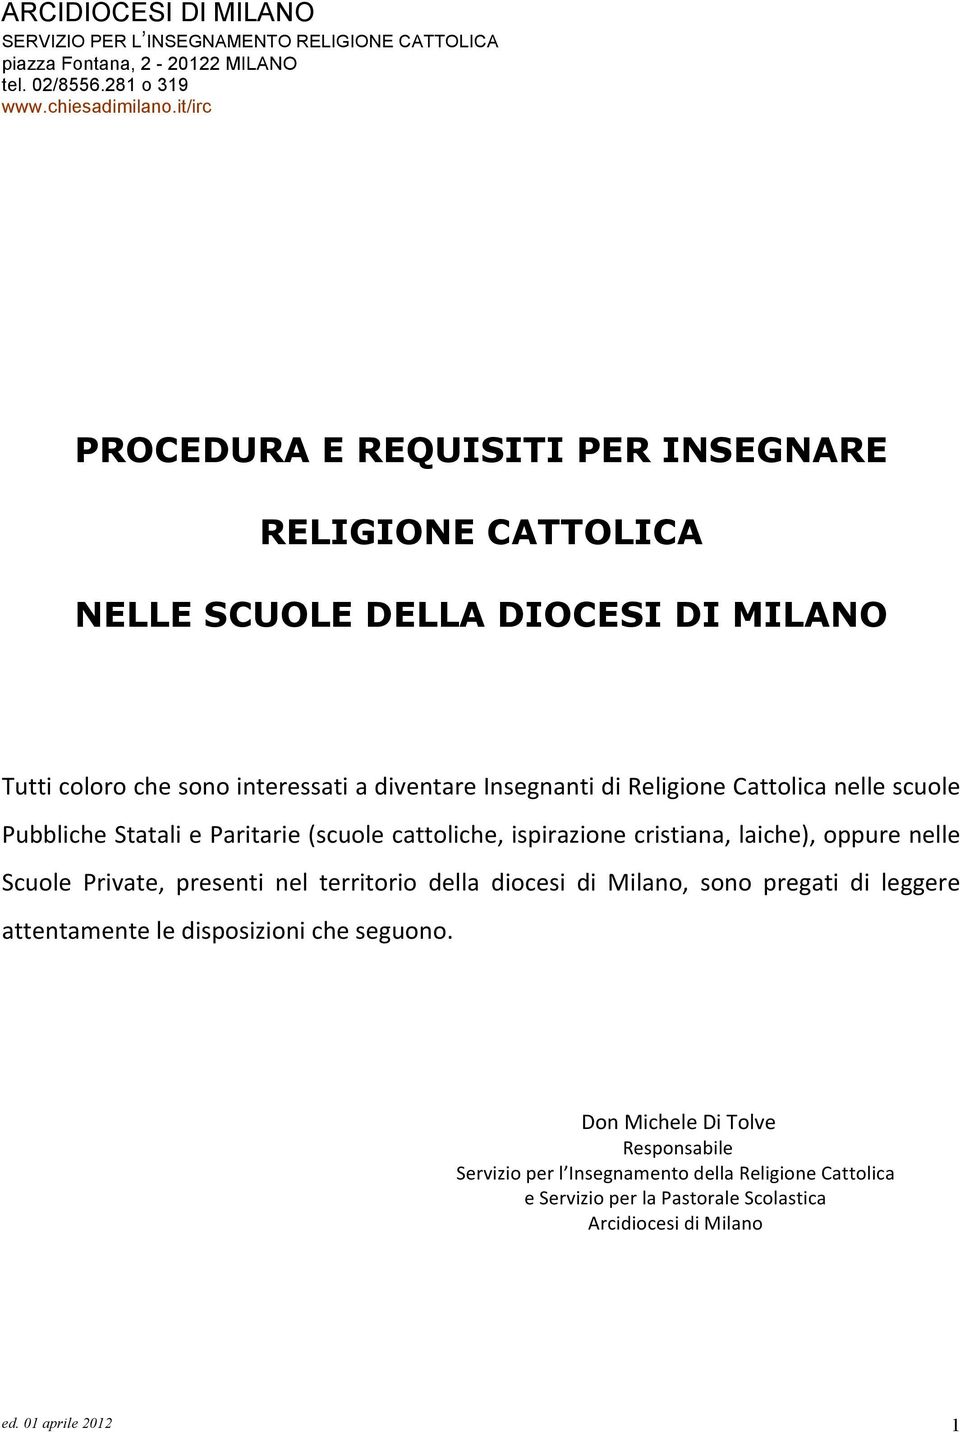 Scuole Private, presenti nel territorio della diocesi di Milano, sono pregati di leggere attentamente le disposizioni che seguono.